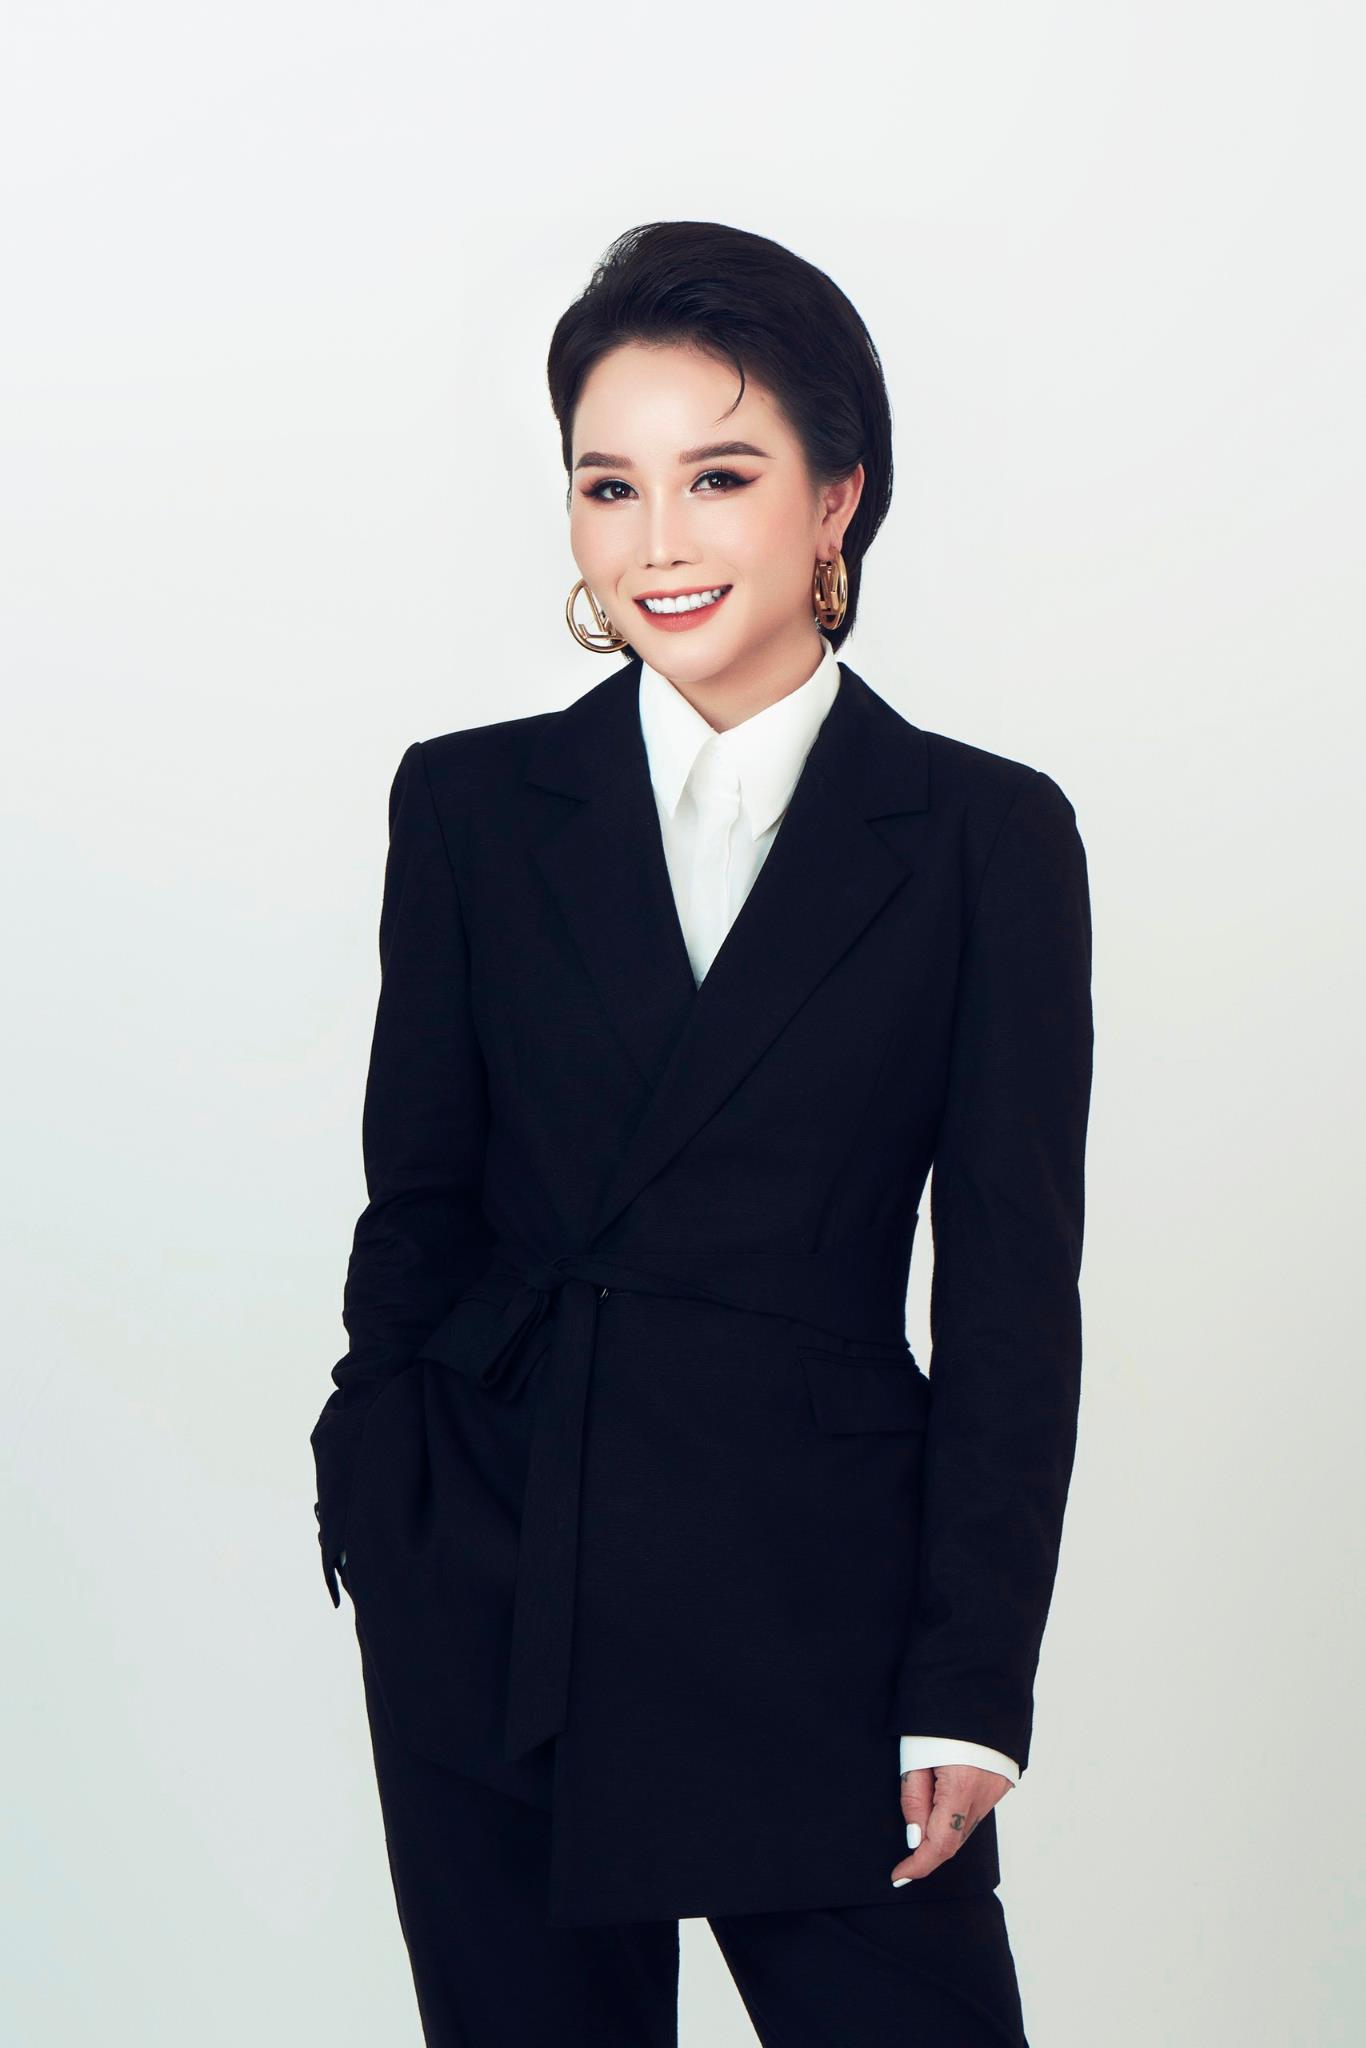 CEO Hoàng Song Hà: Người truyền lửa cho cộng đồng doanh nhân nữ trẻ - Ảnh 1.